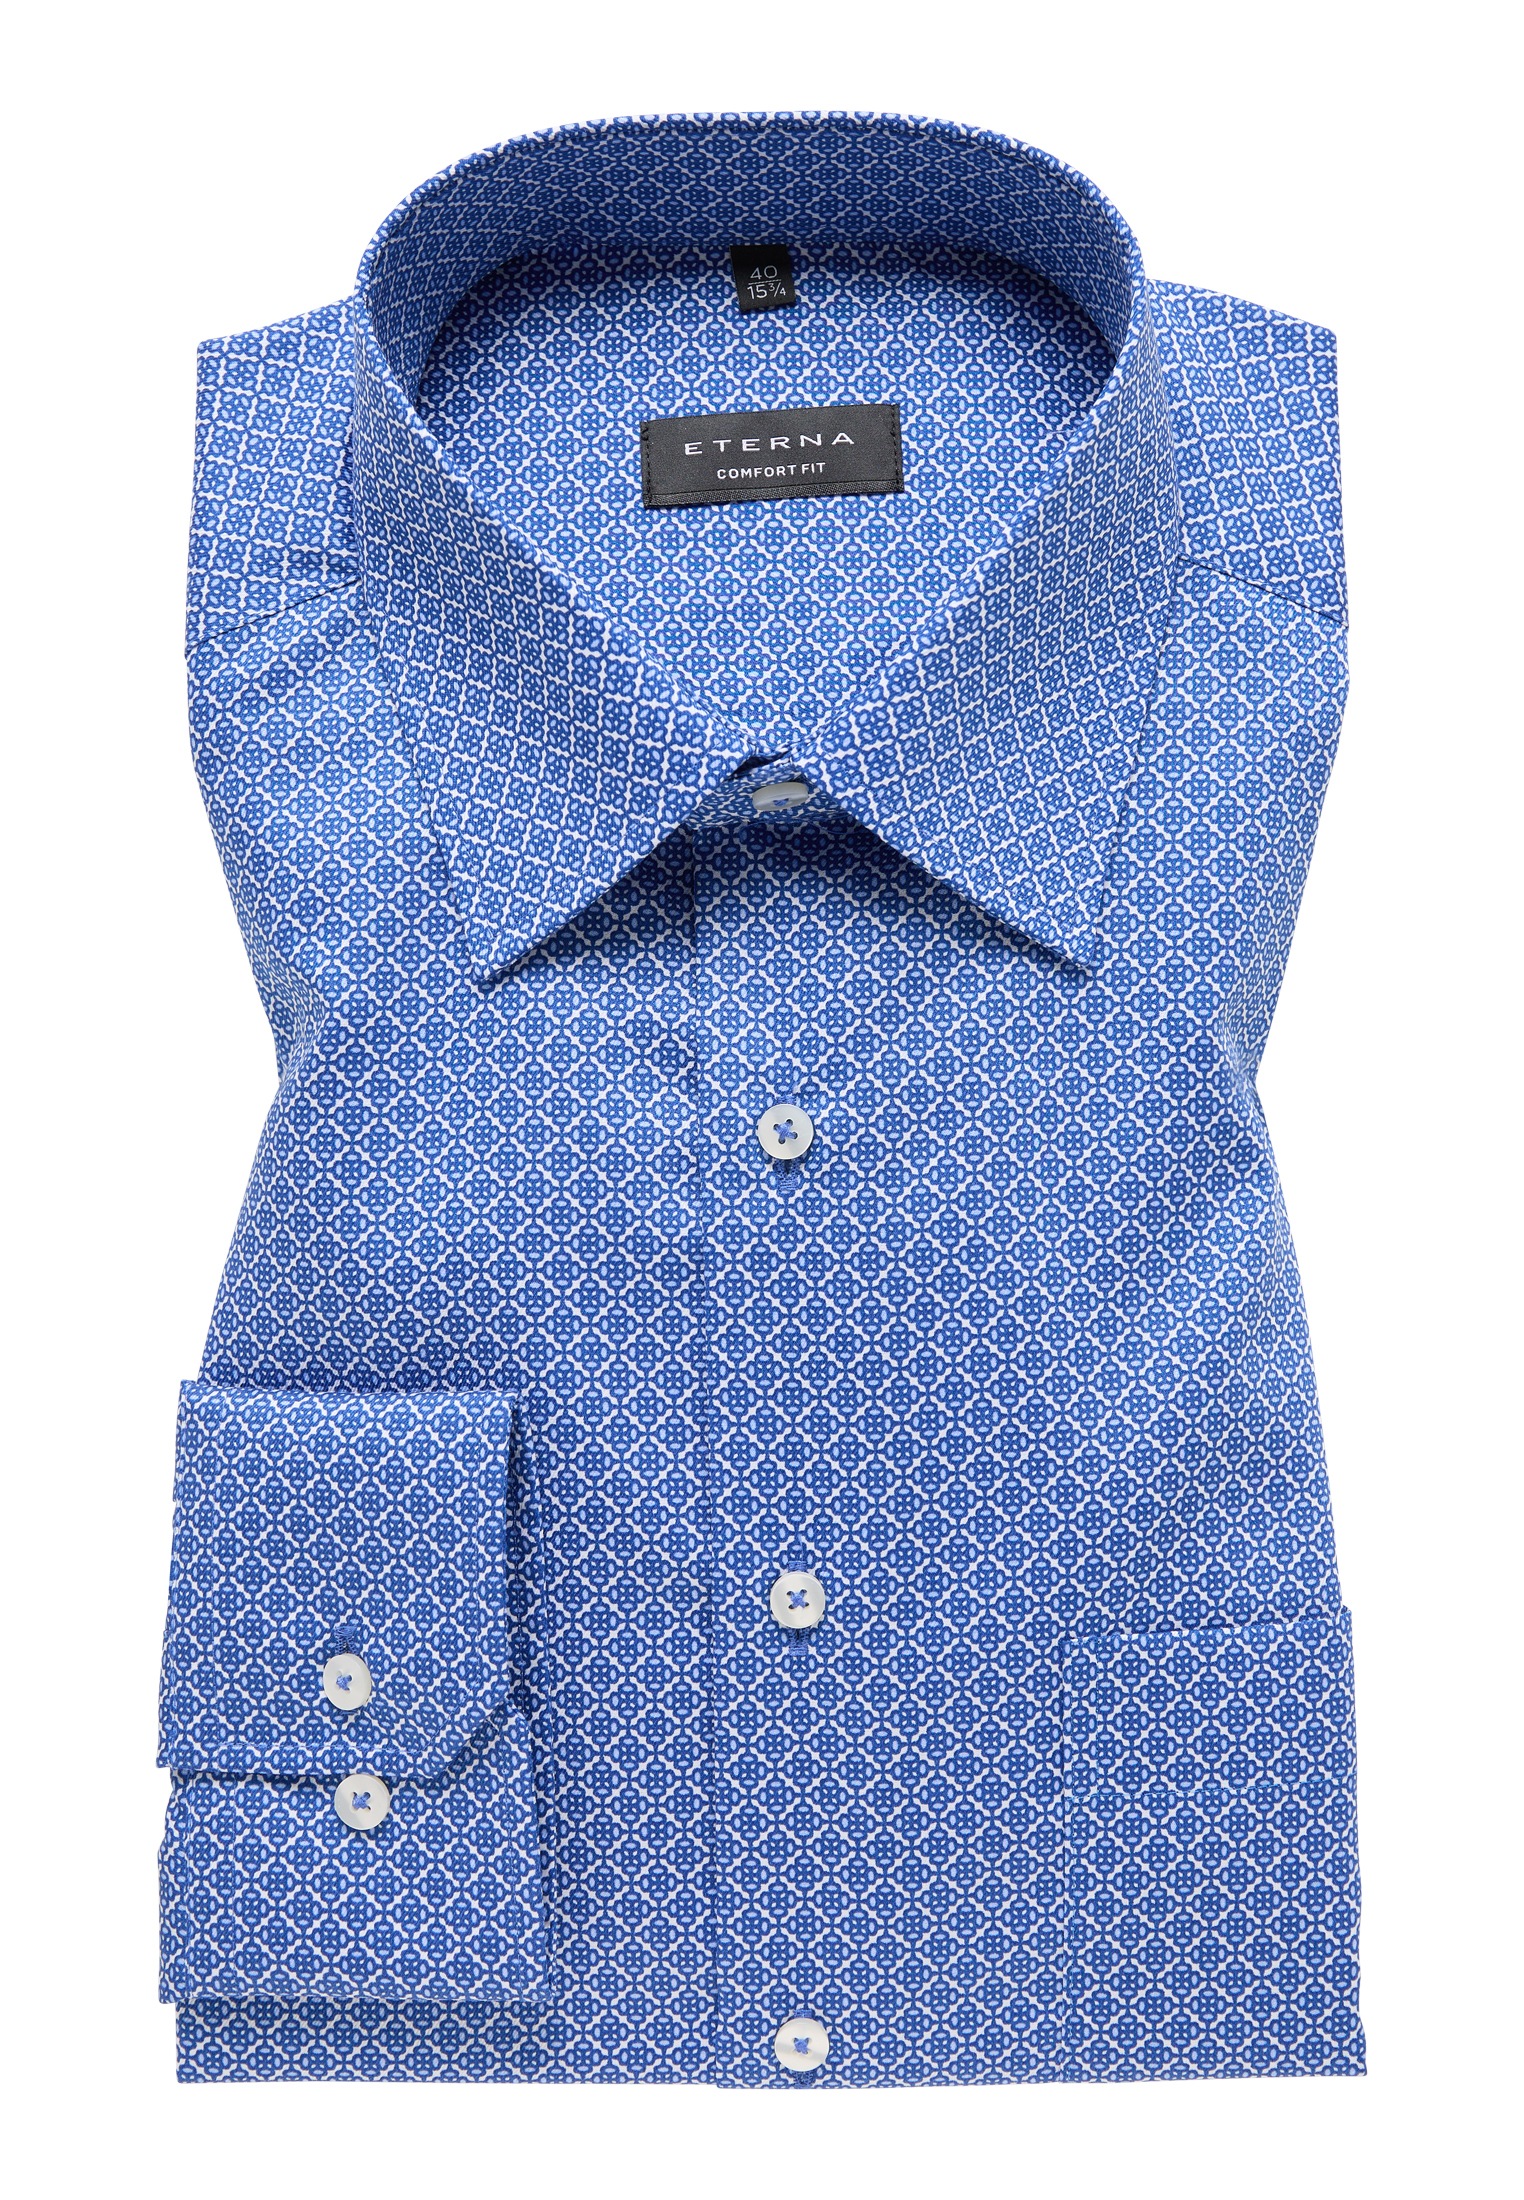 Hemden Langarm ➤ versandkostenfrei shoppen Mindestbestellwert - ohne